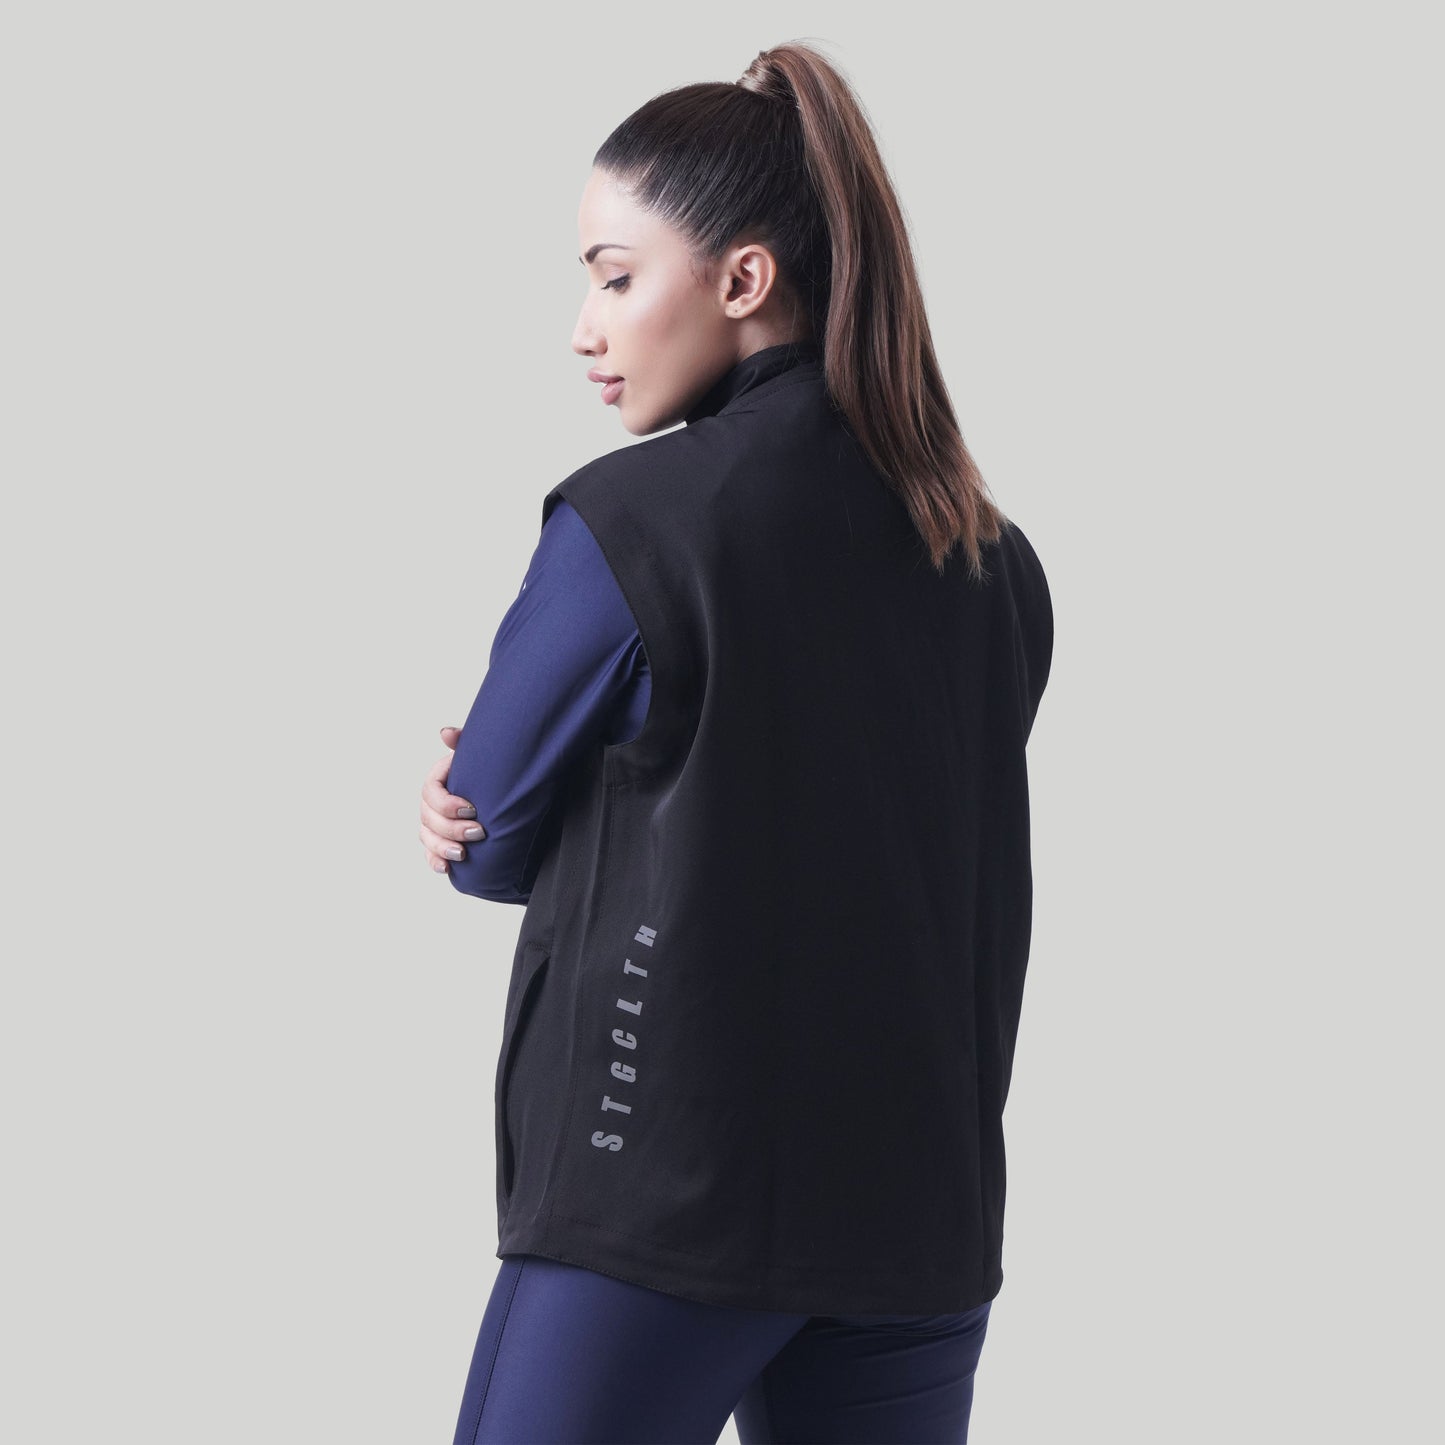 Stag Unisex Sports Sleeveless Jacket (Black)